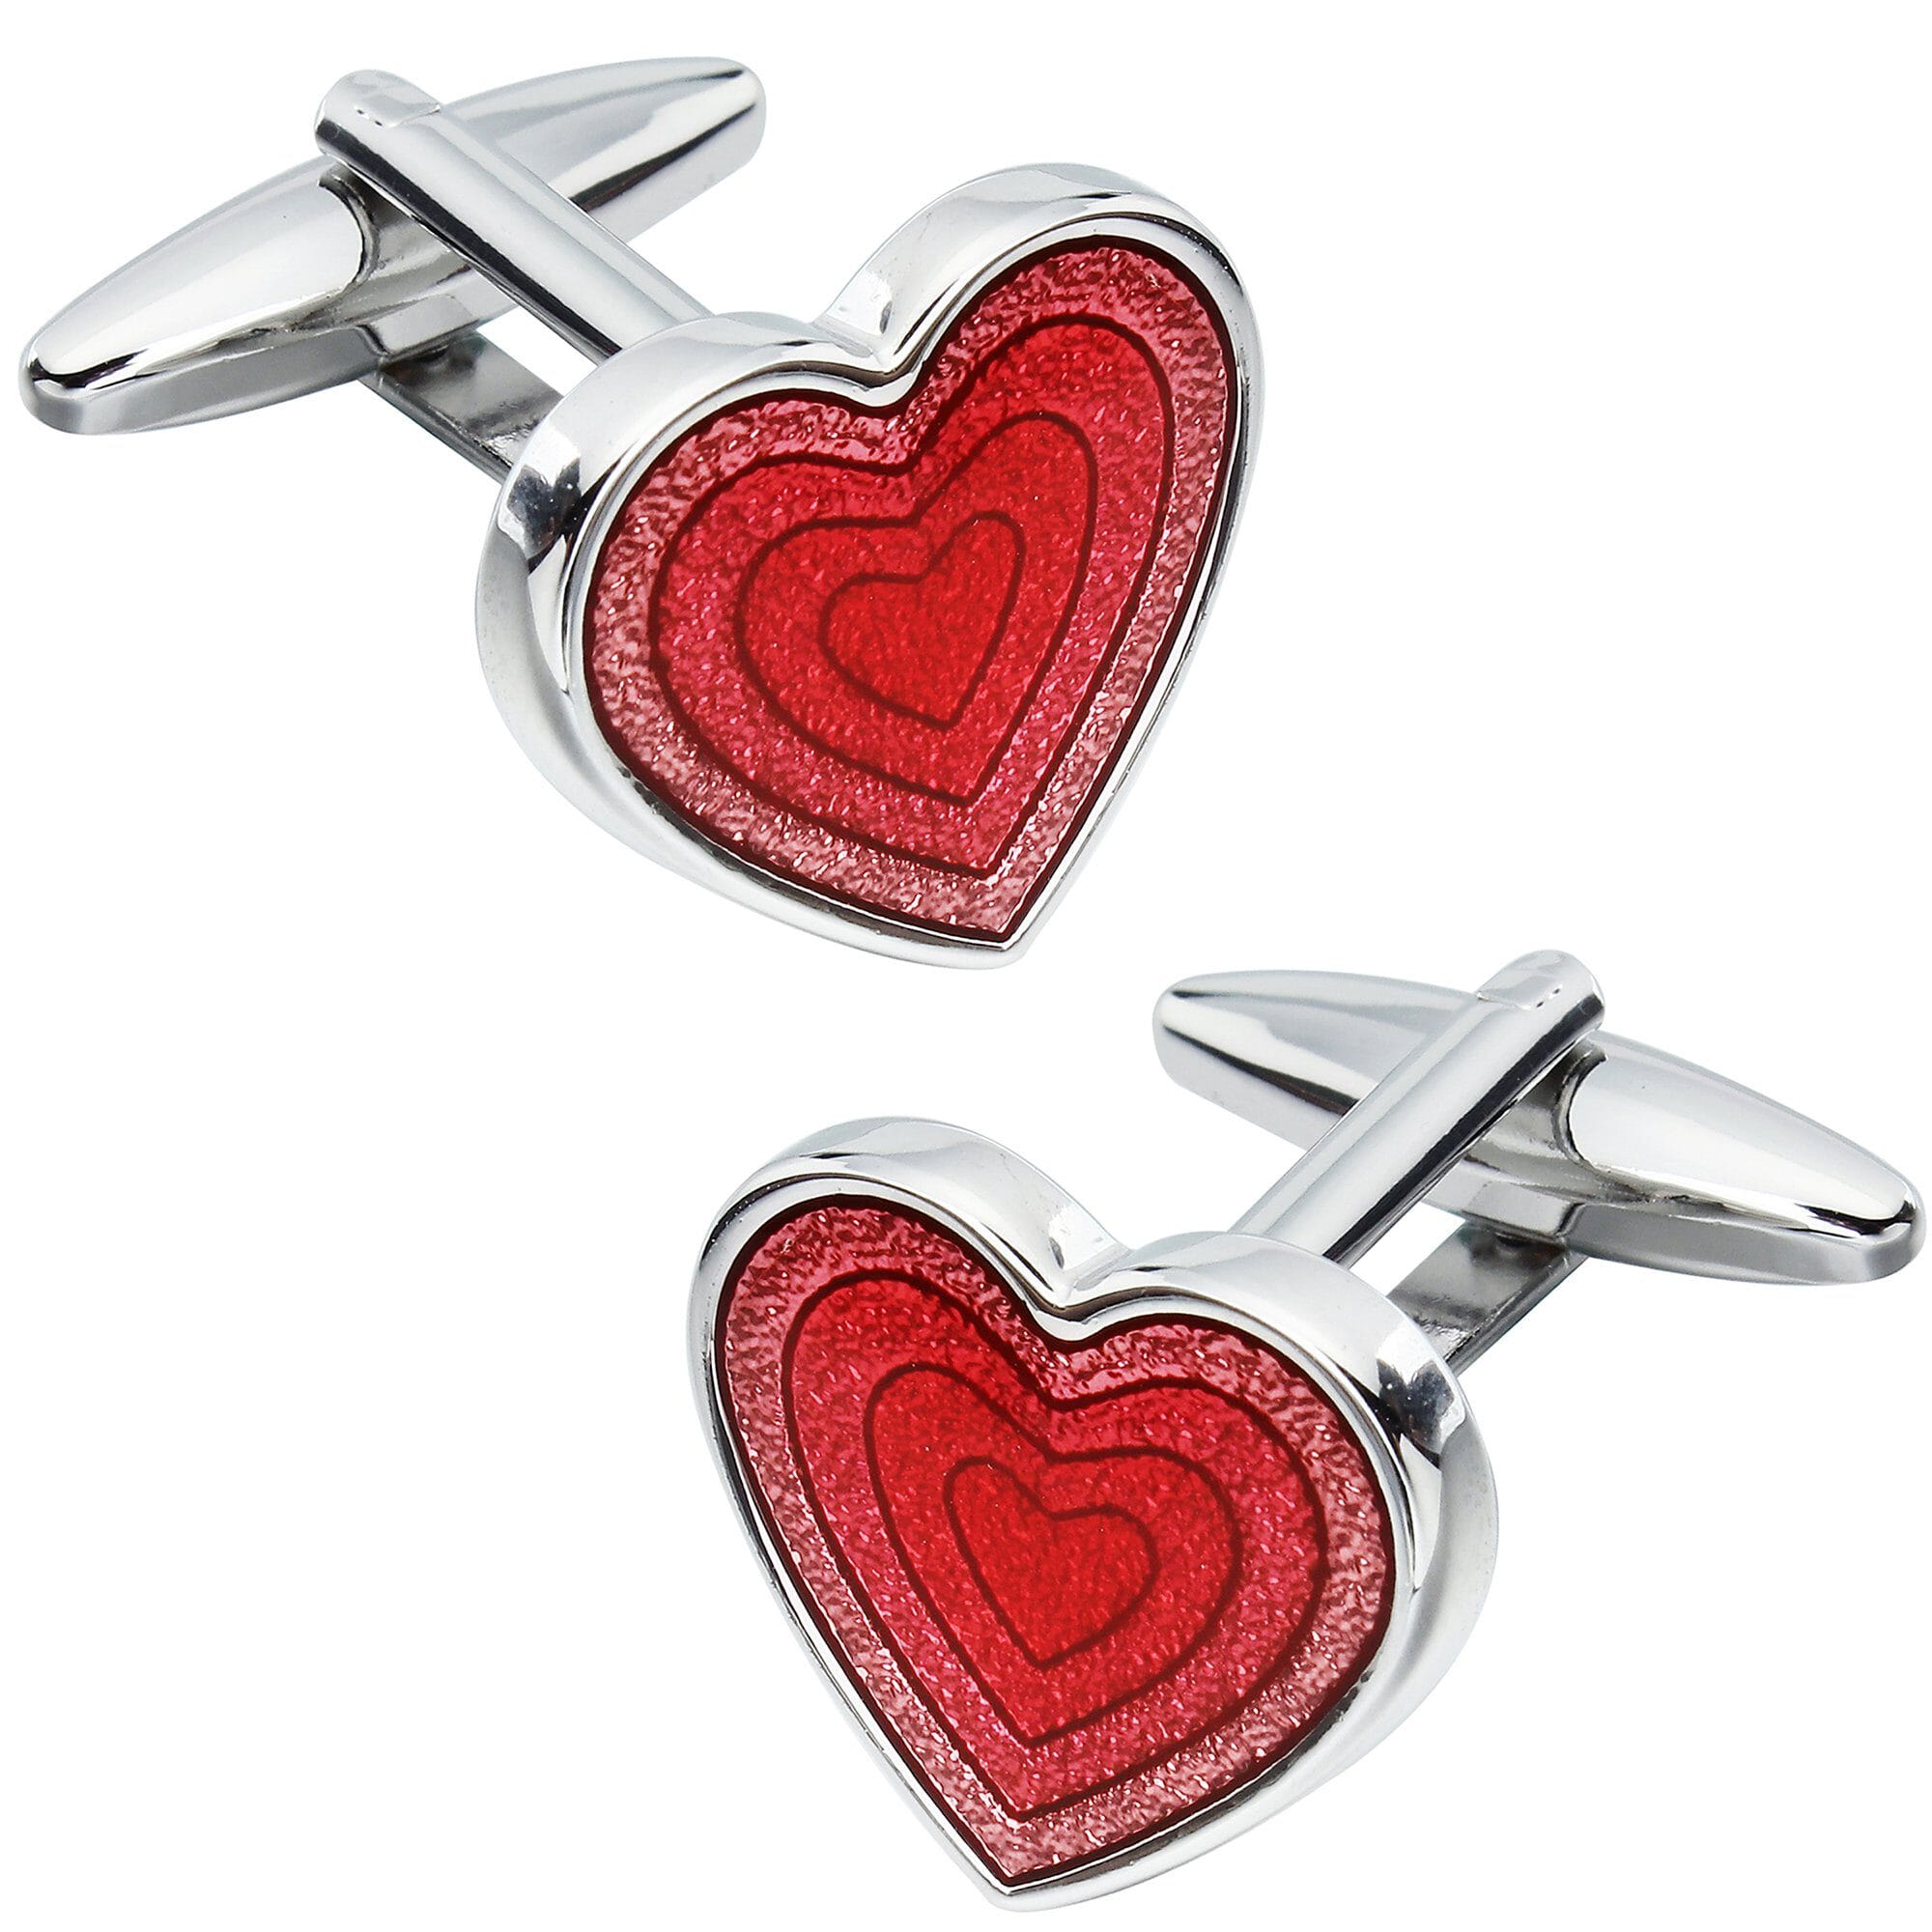 Red Heart Shaped Cufflinks Novelty Cufflinks Clinks Australia Red Heart Shaped Cufflinks 